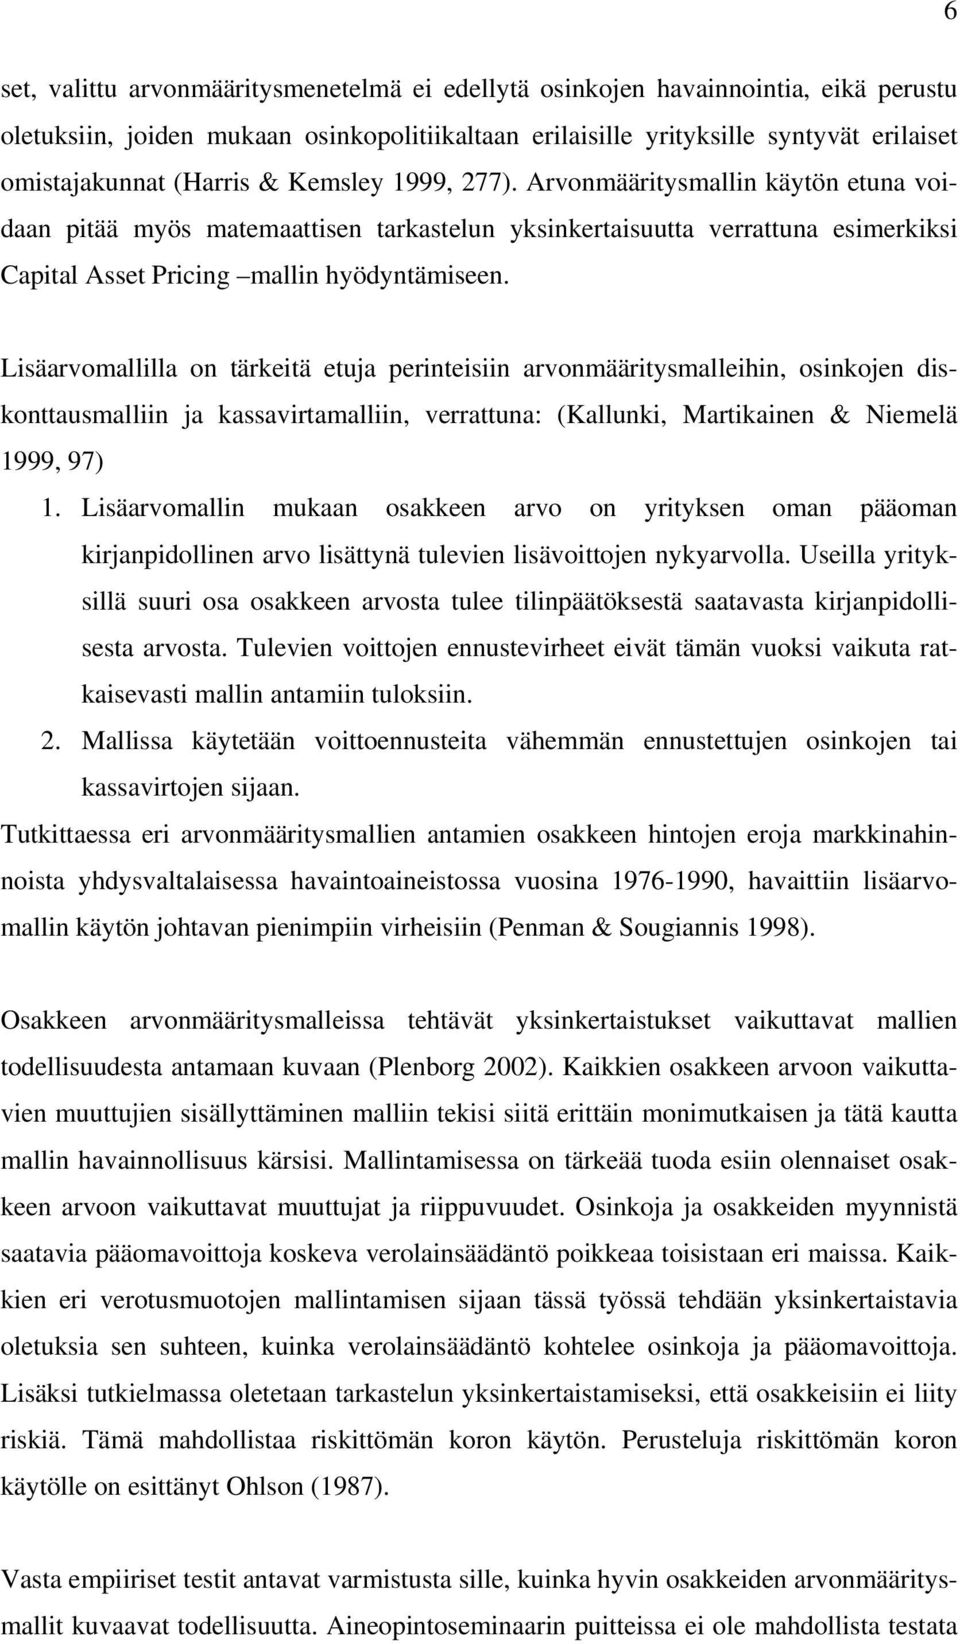 Lisäarvomallilla on ärkeiä euja perineisiin arvonmääriysmalleihin, osinkojen iskonausmalliin ja kassaviramalliin, verrauna: Kallunki, Marikainen & Niemelä 999, 97.